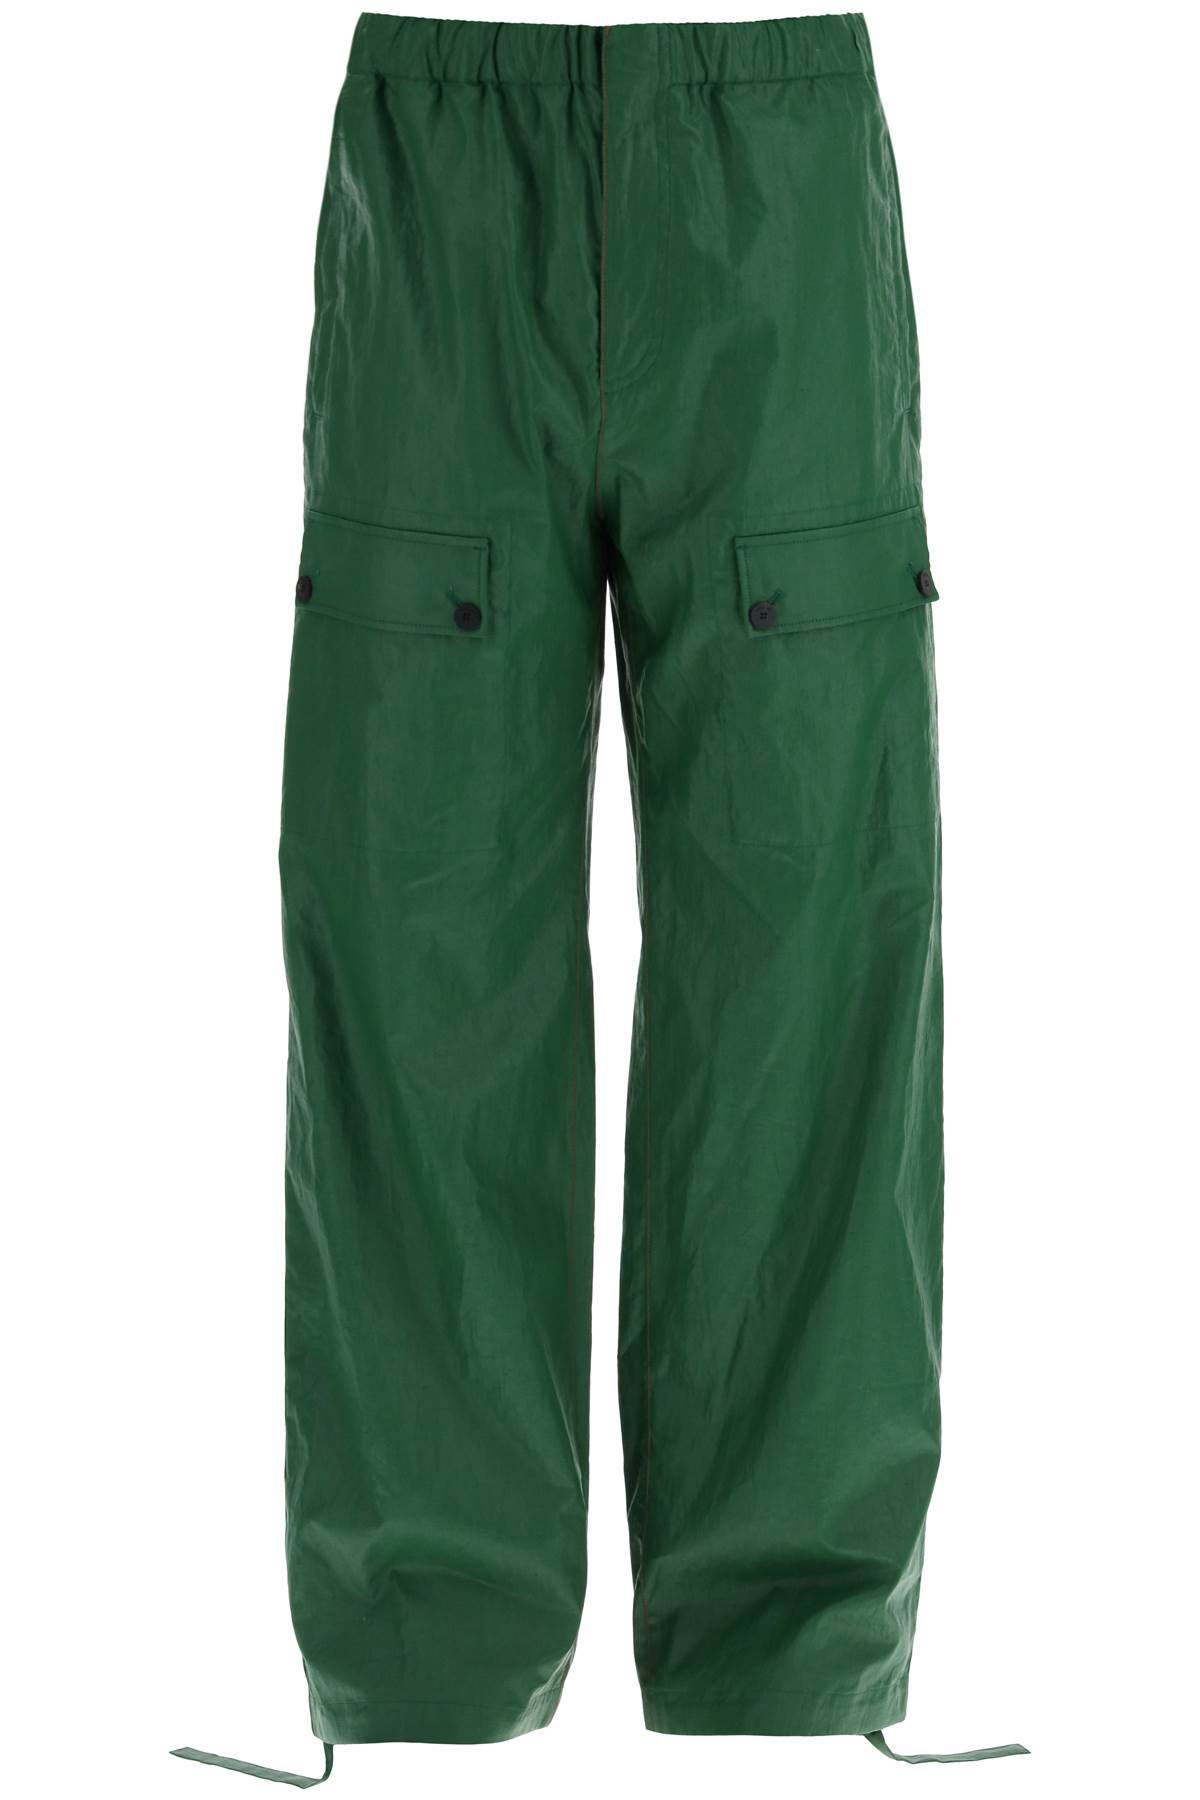 Ferragamo Linen Coated Pants For Men In Green